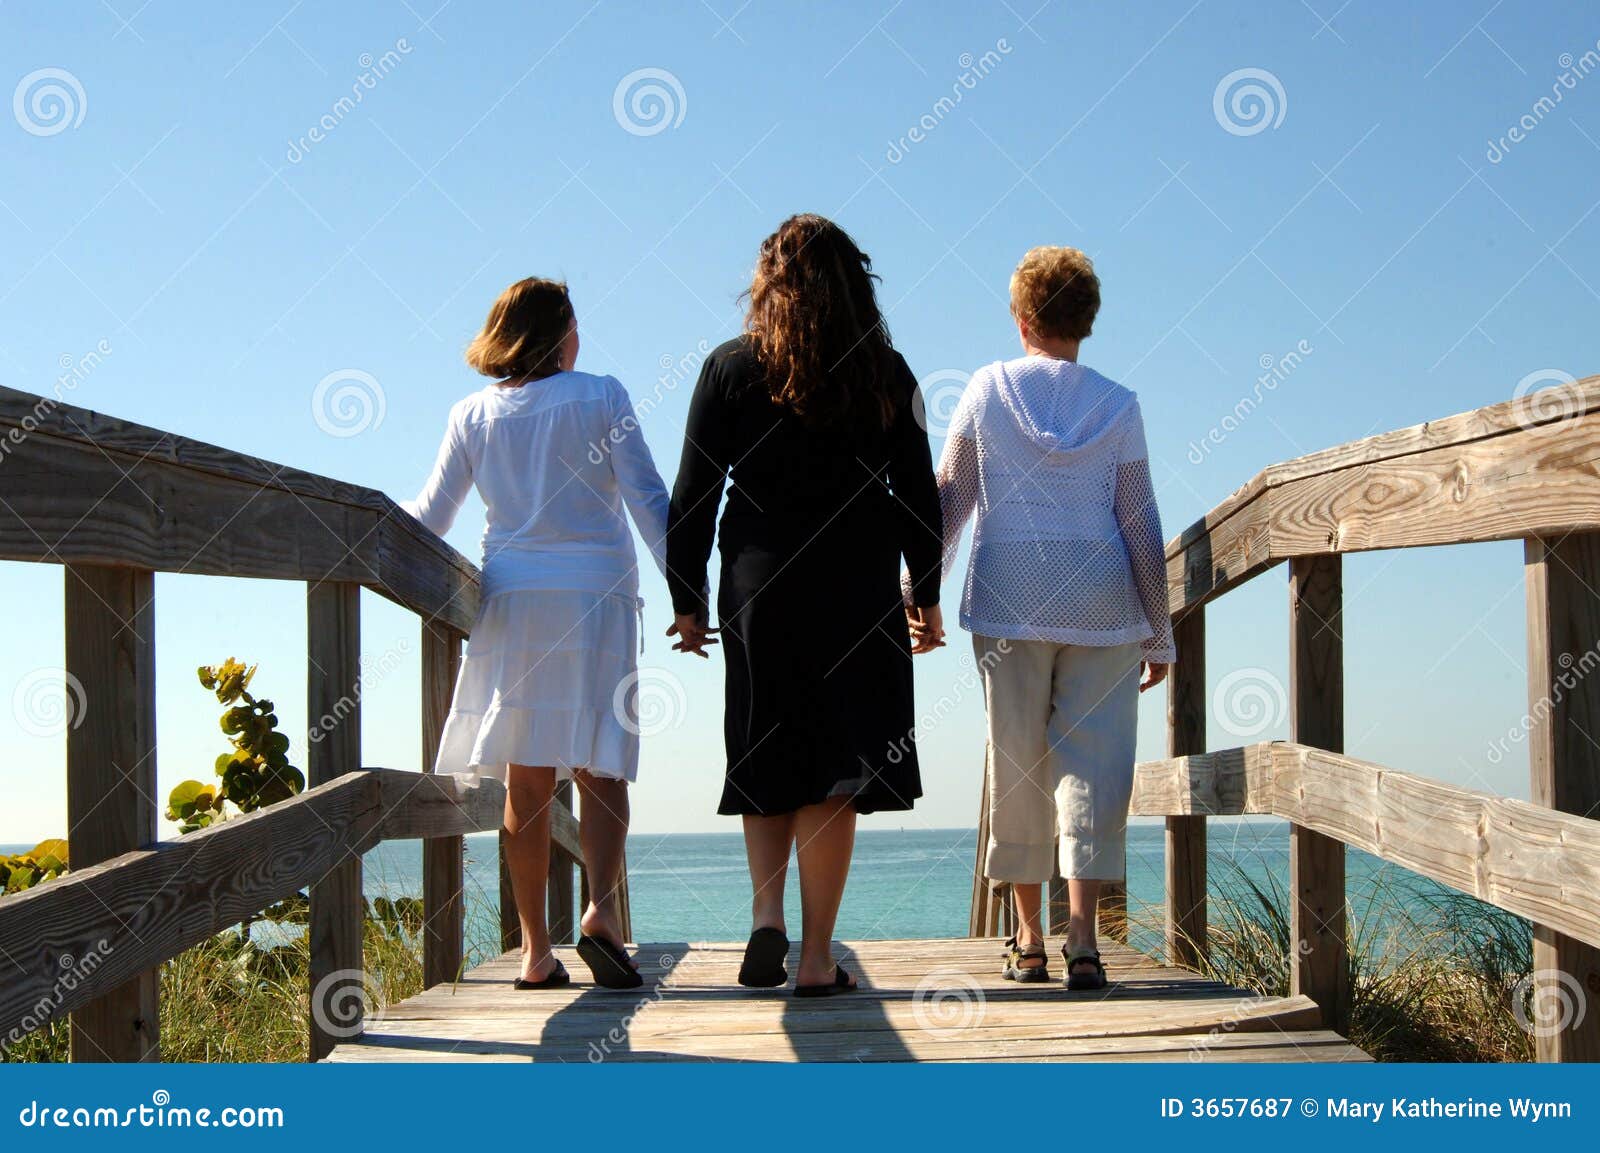 generations of women boardwalk